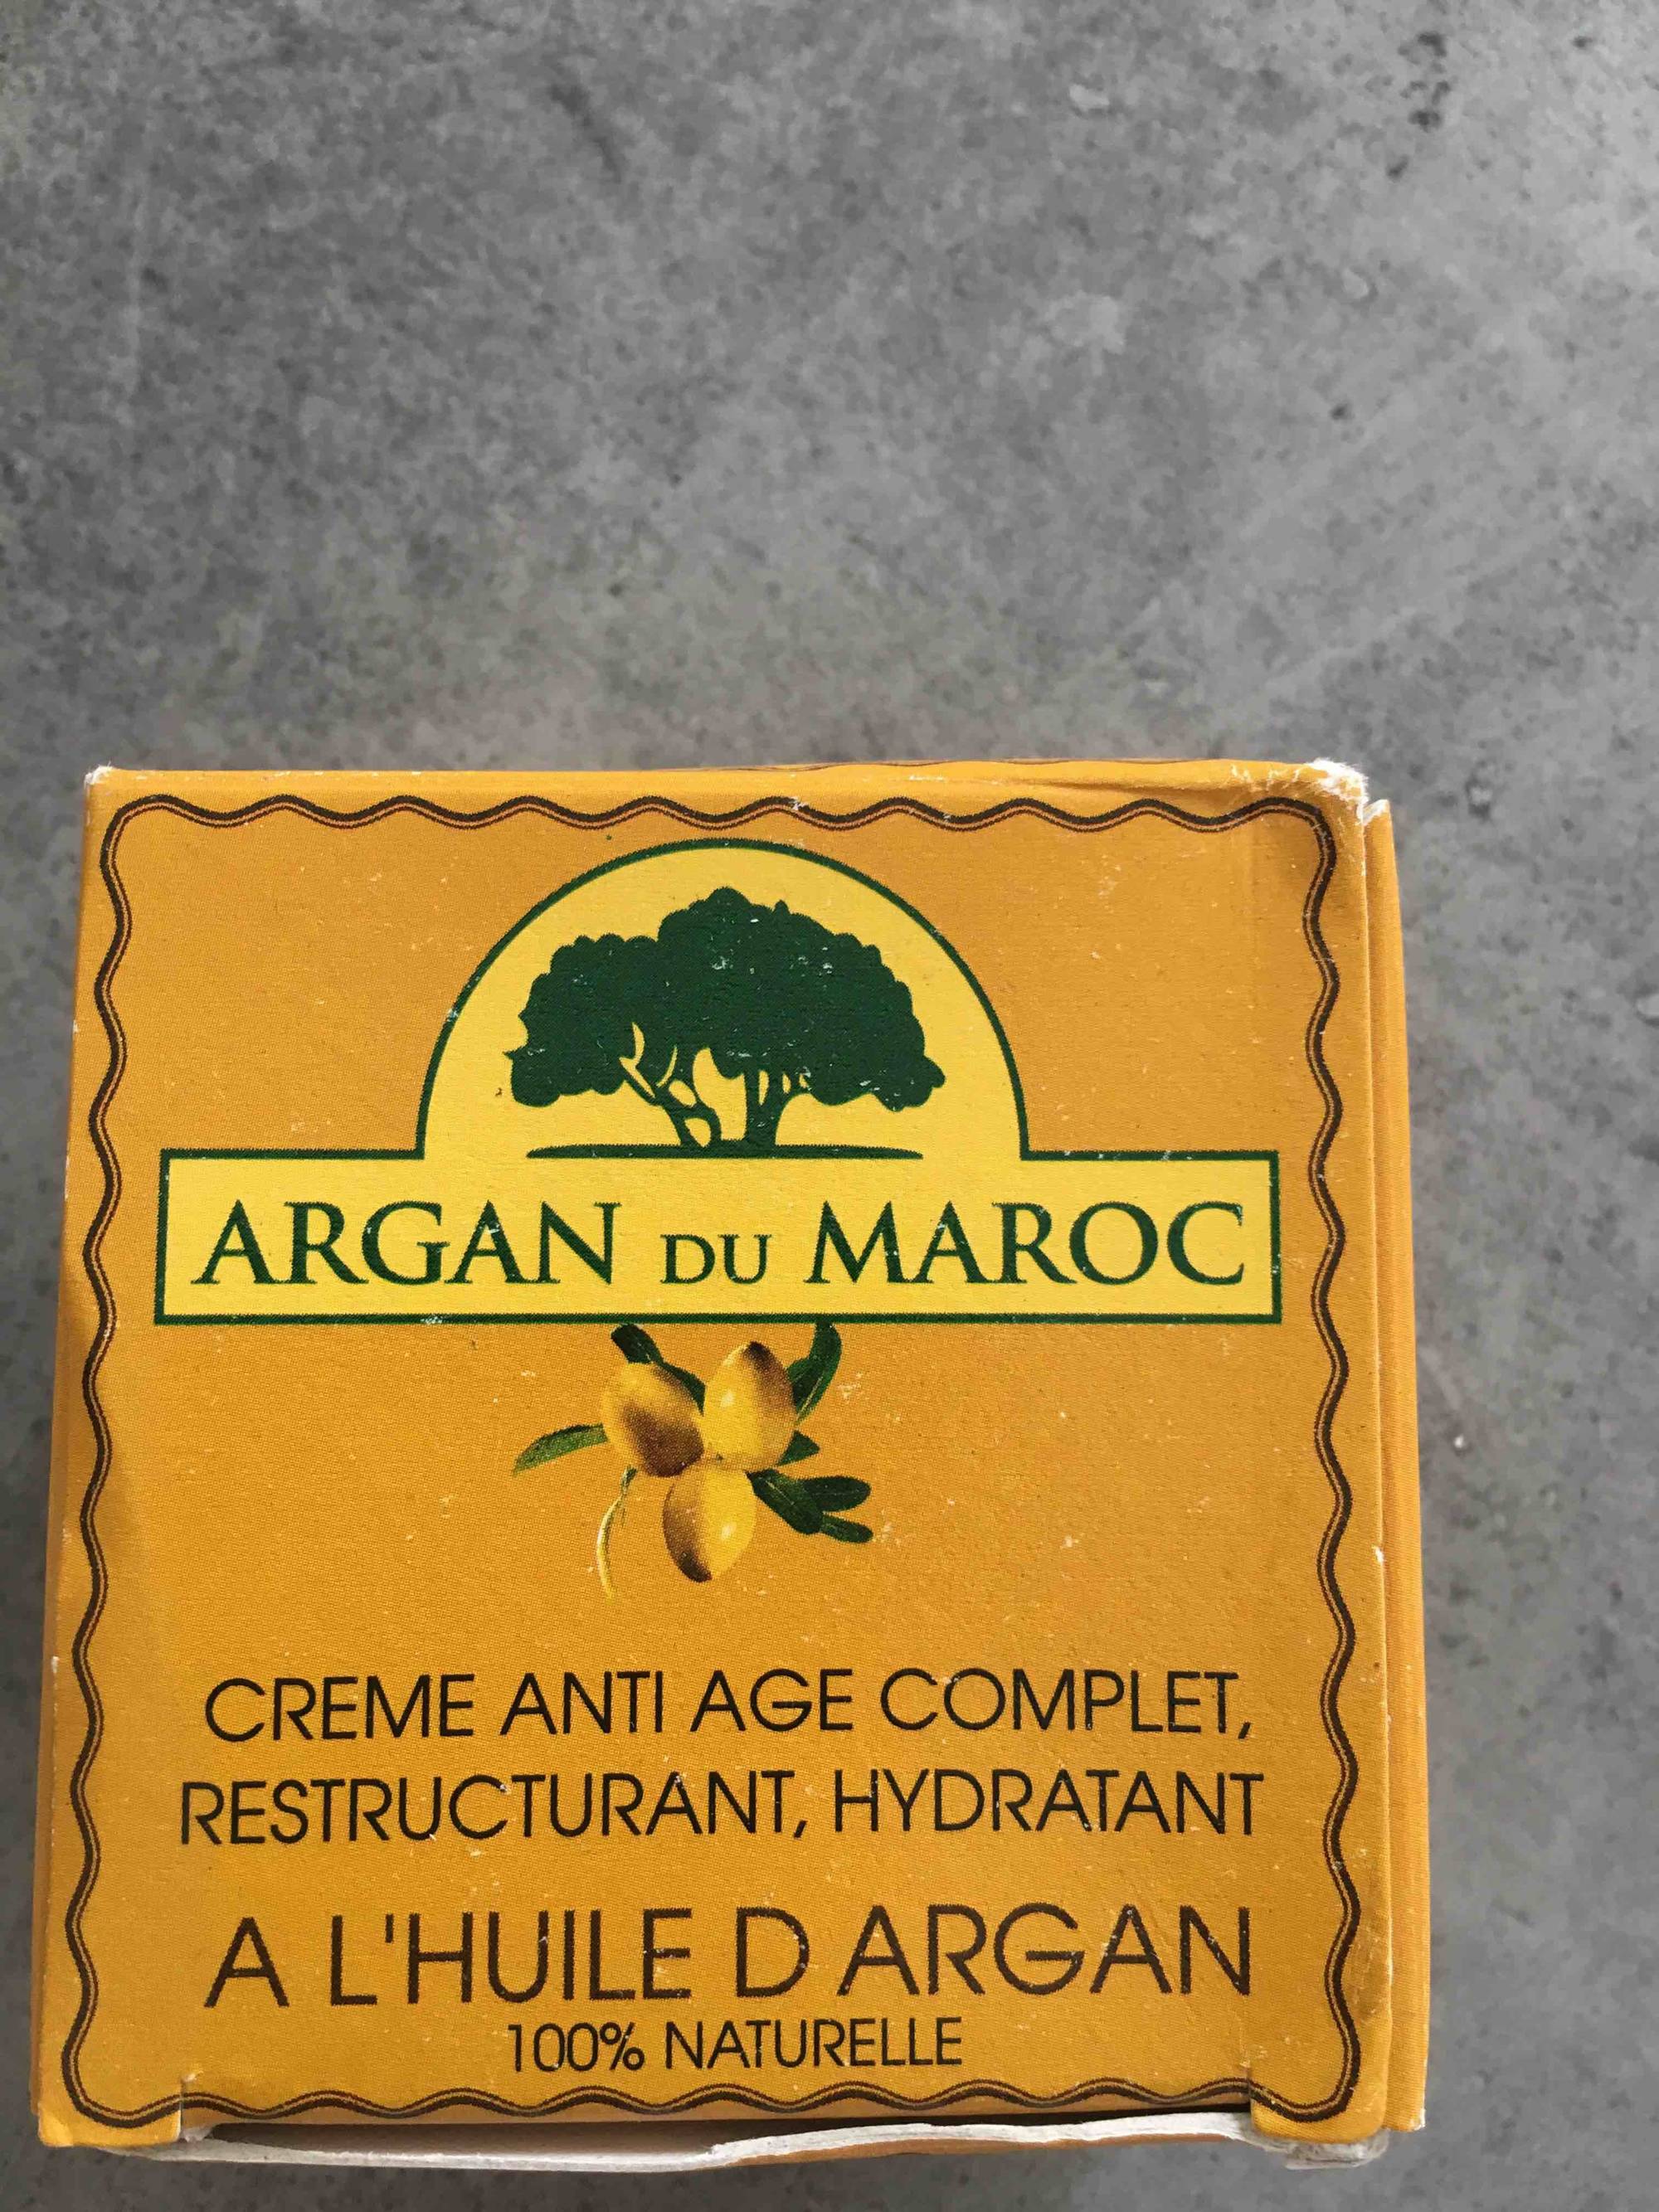 ARGAN DU MAROC - Crème anti-âge complert à l'huile d'Argan